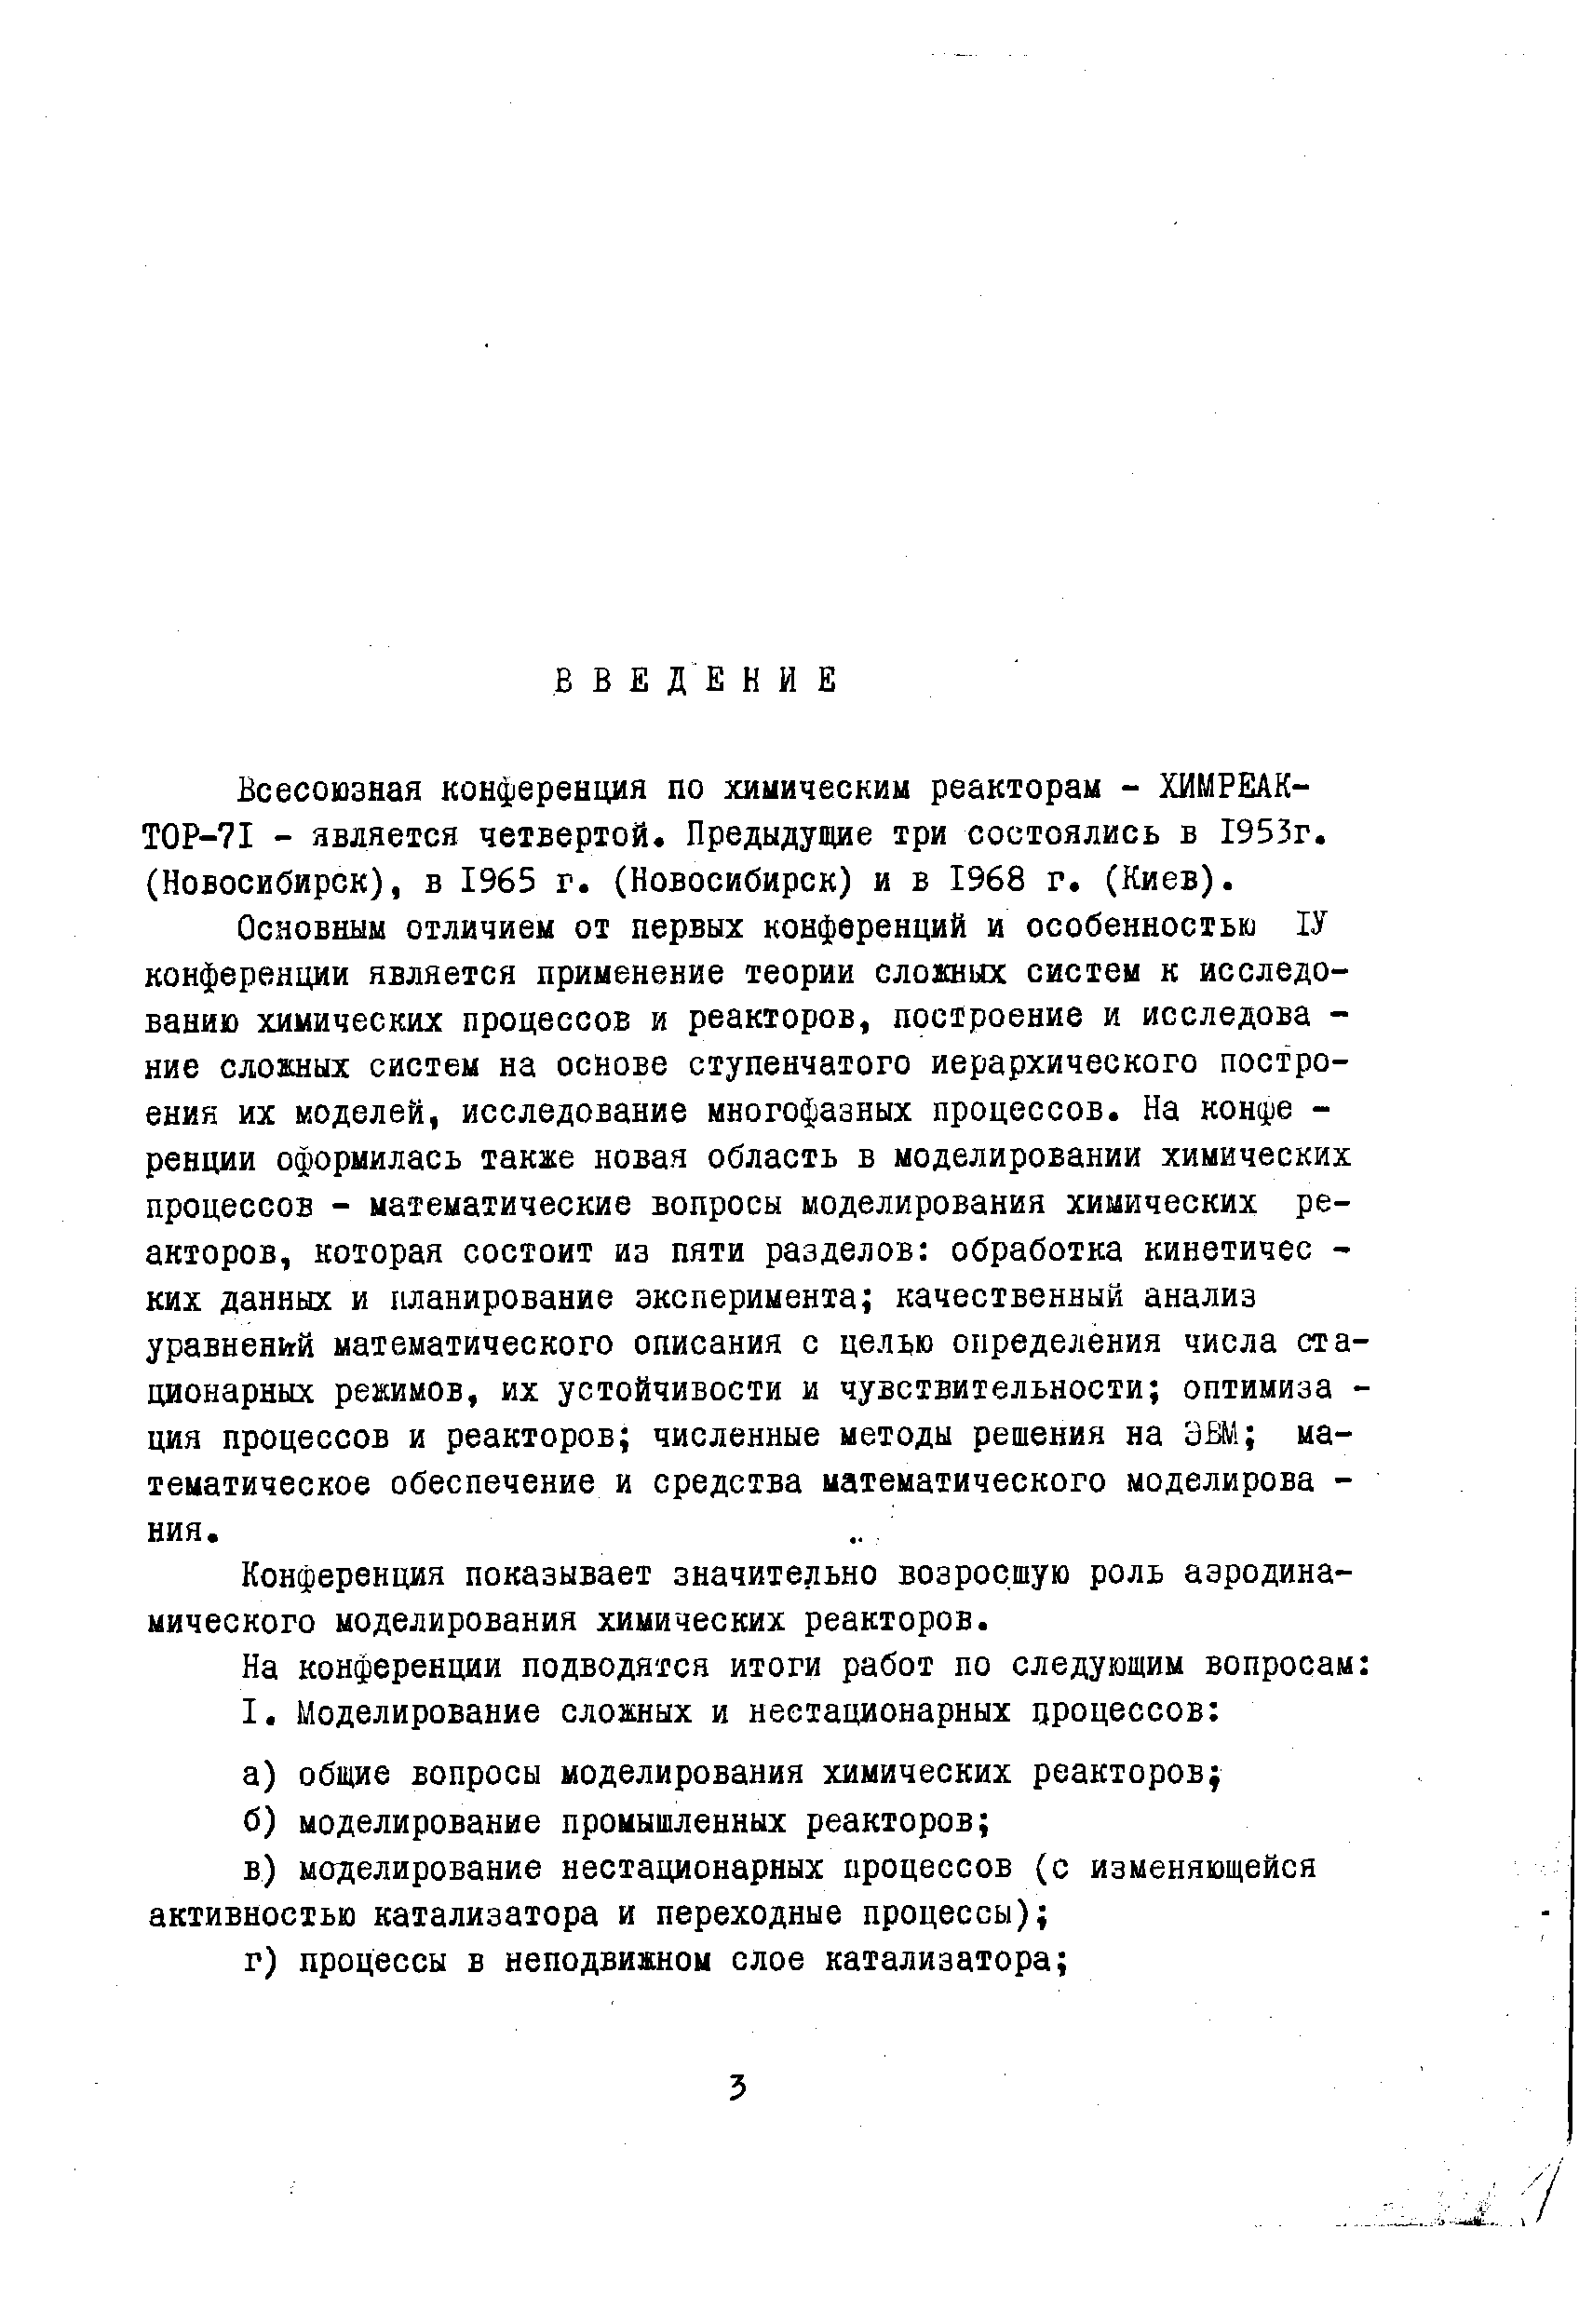 Всесоюзная конференция по химическим реакторам - ХИМРЕАК-ТОР-71 - является четвертой. Предыдущие три состоялись в 1953г. (Новосибирск), в 1965 г. (Новосибирск) и в 1968 г. (Киев).